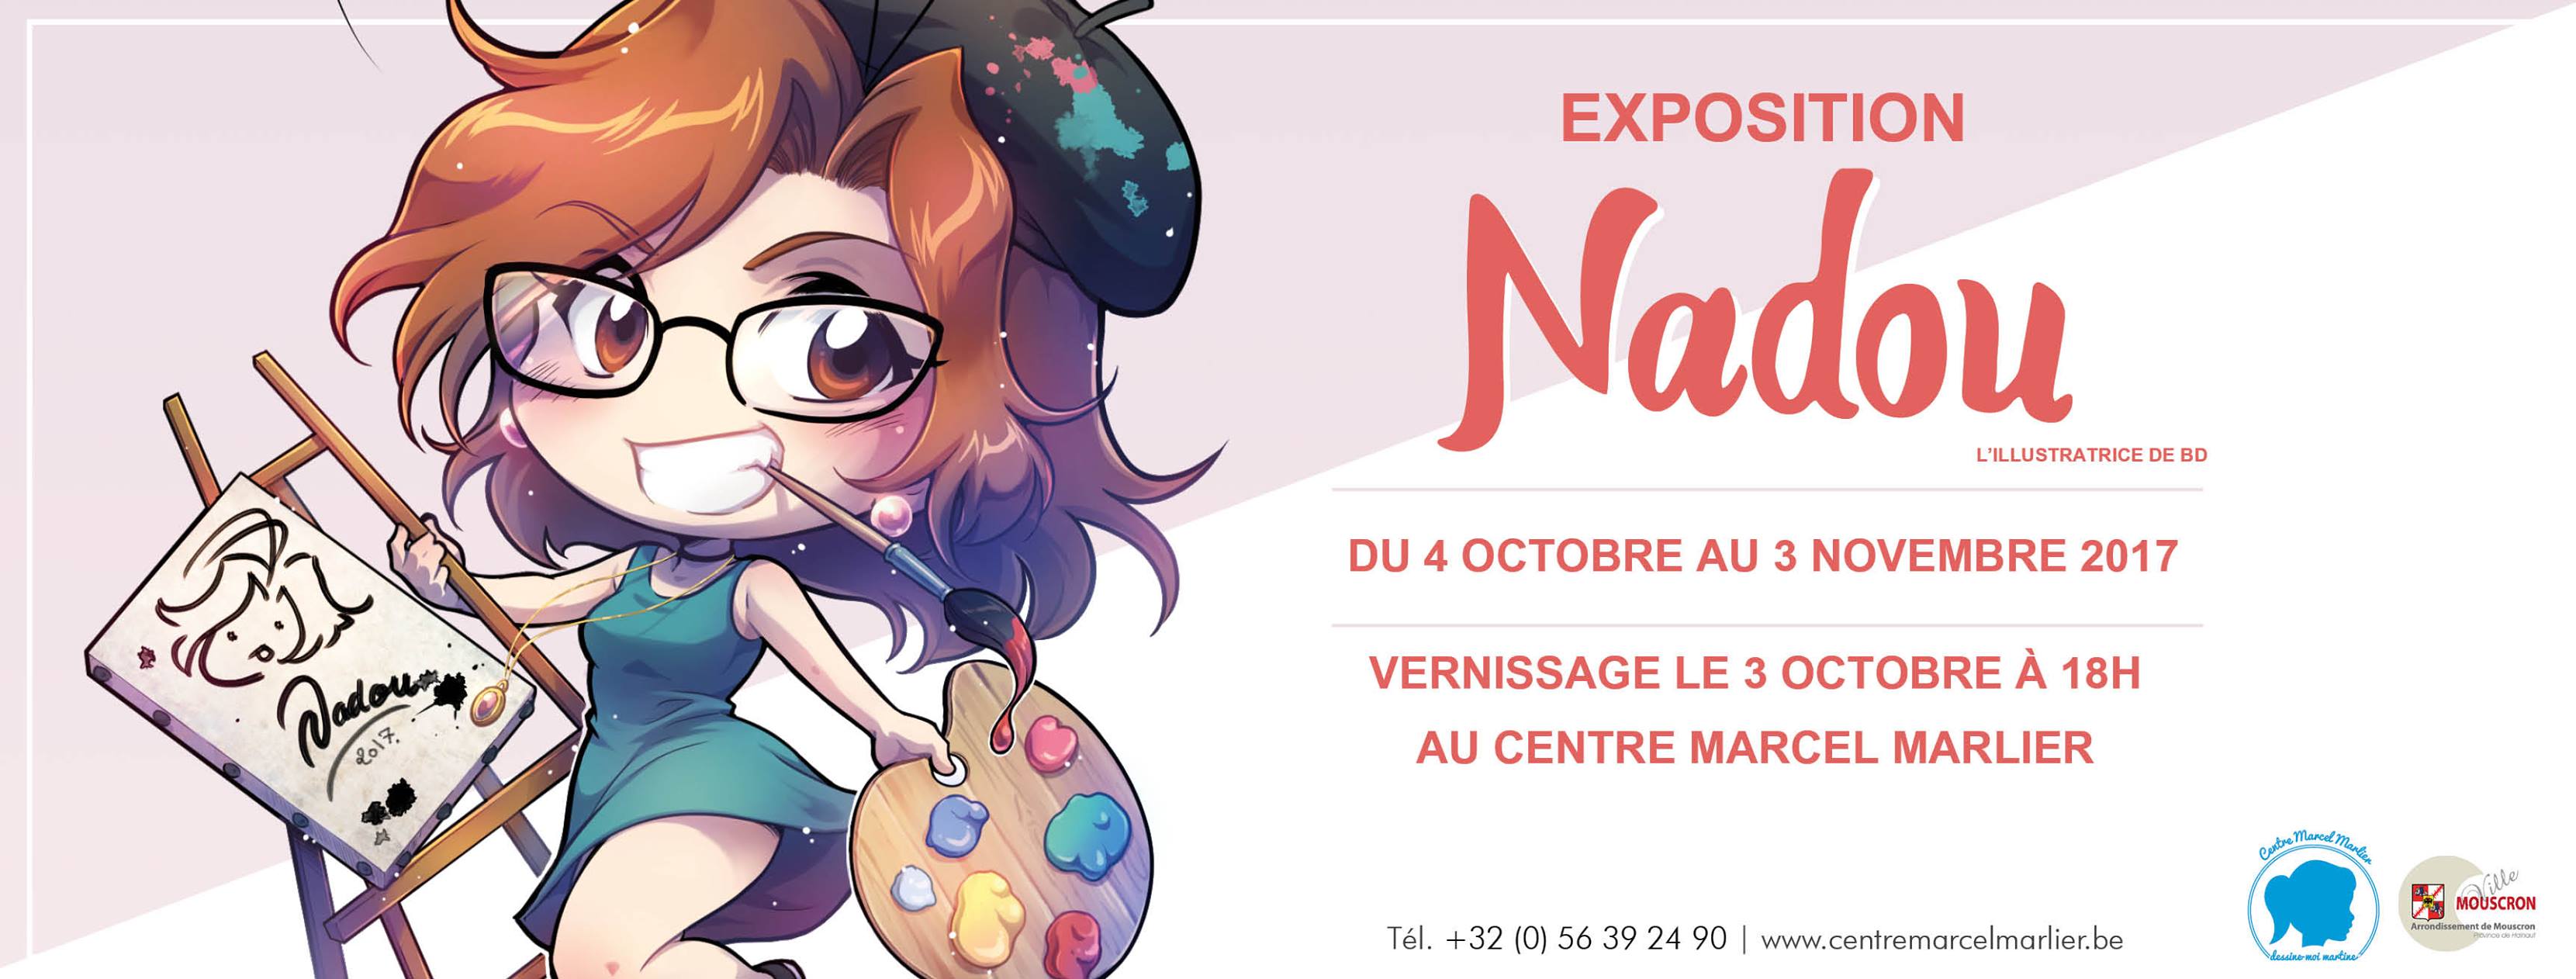 Expo Nadou